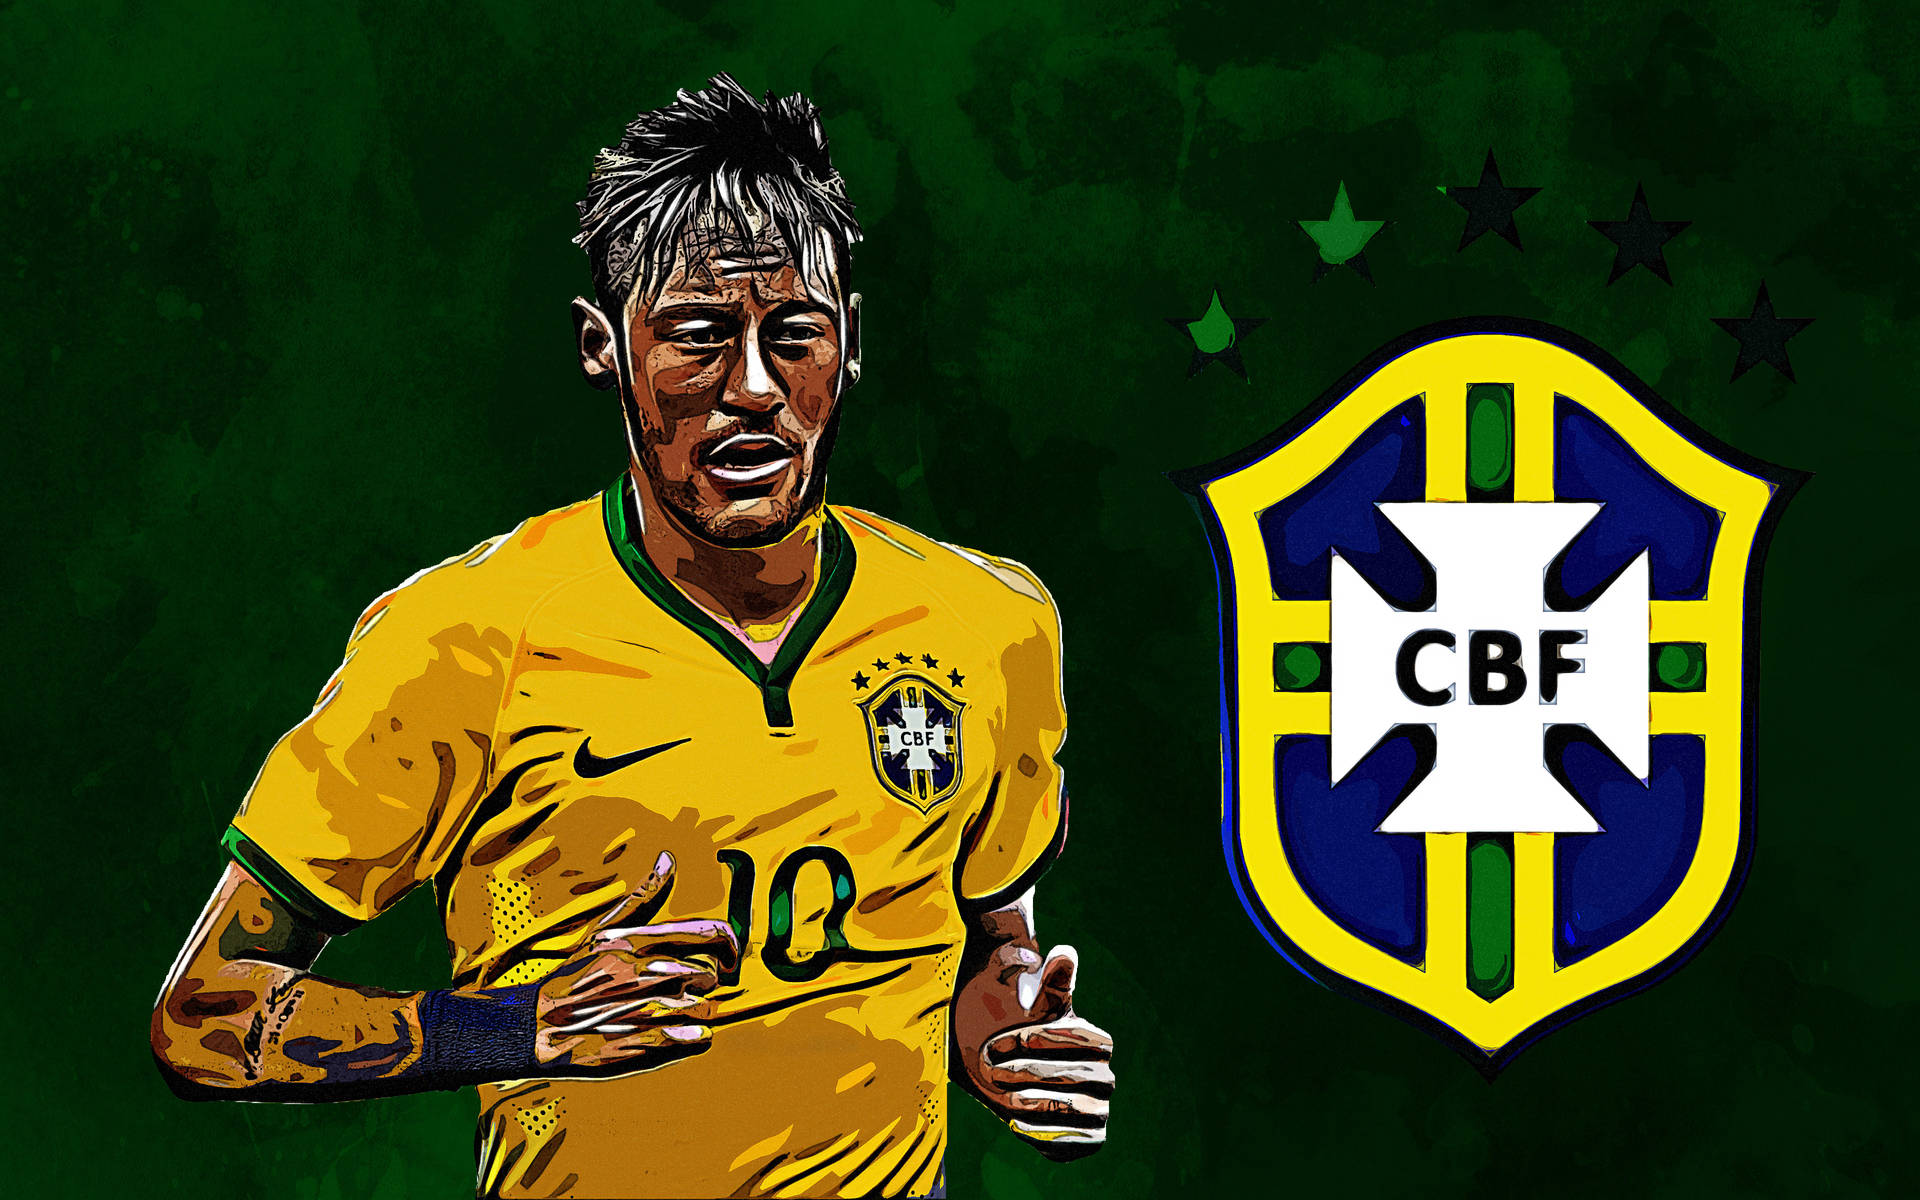 Neymar Jr In Cbf Jersey Background